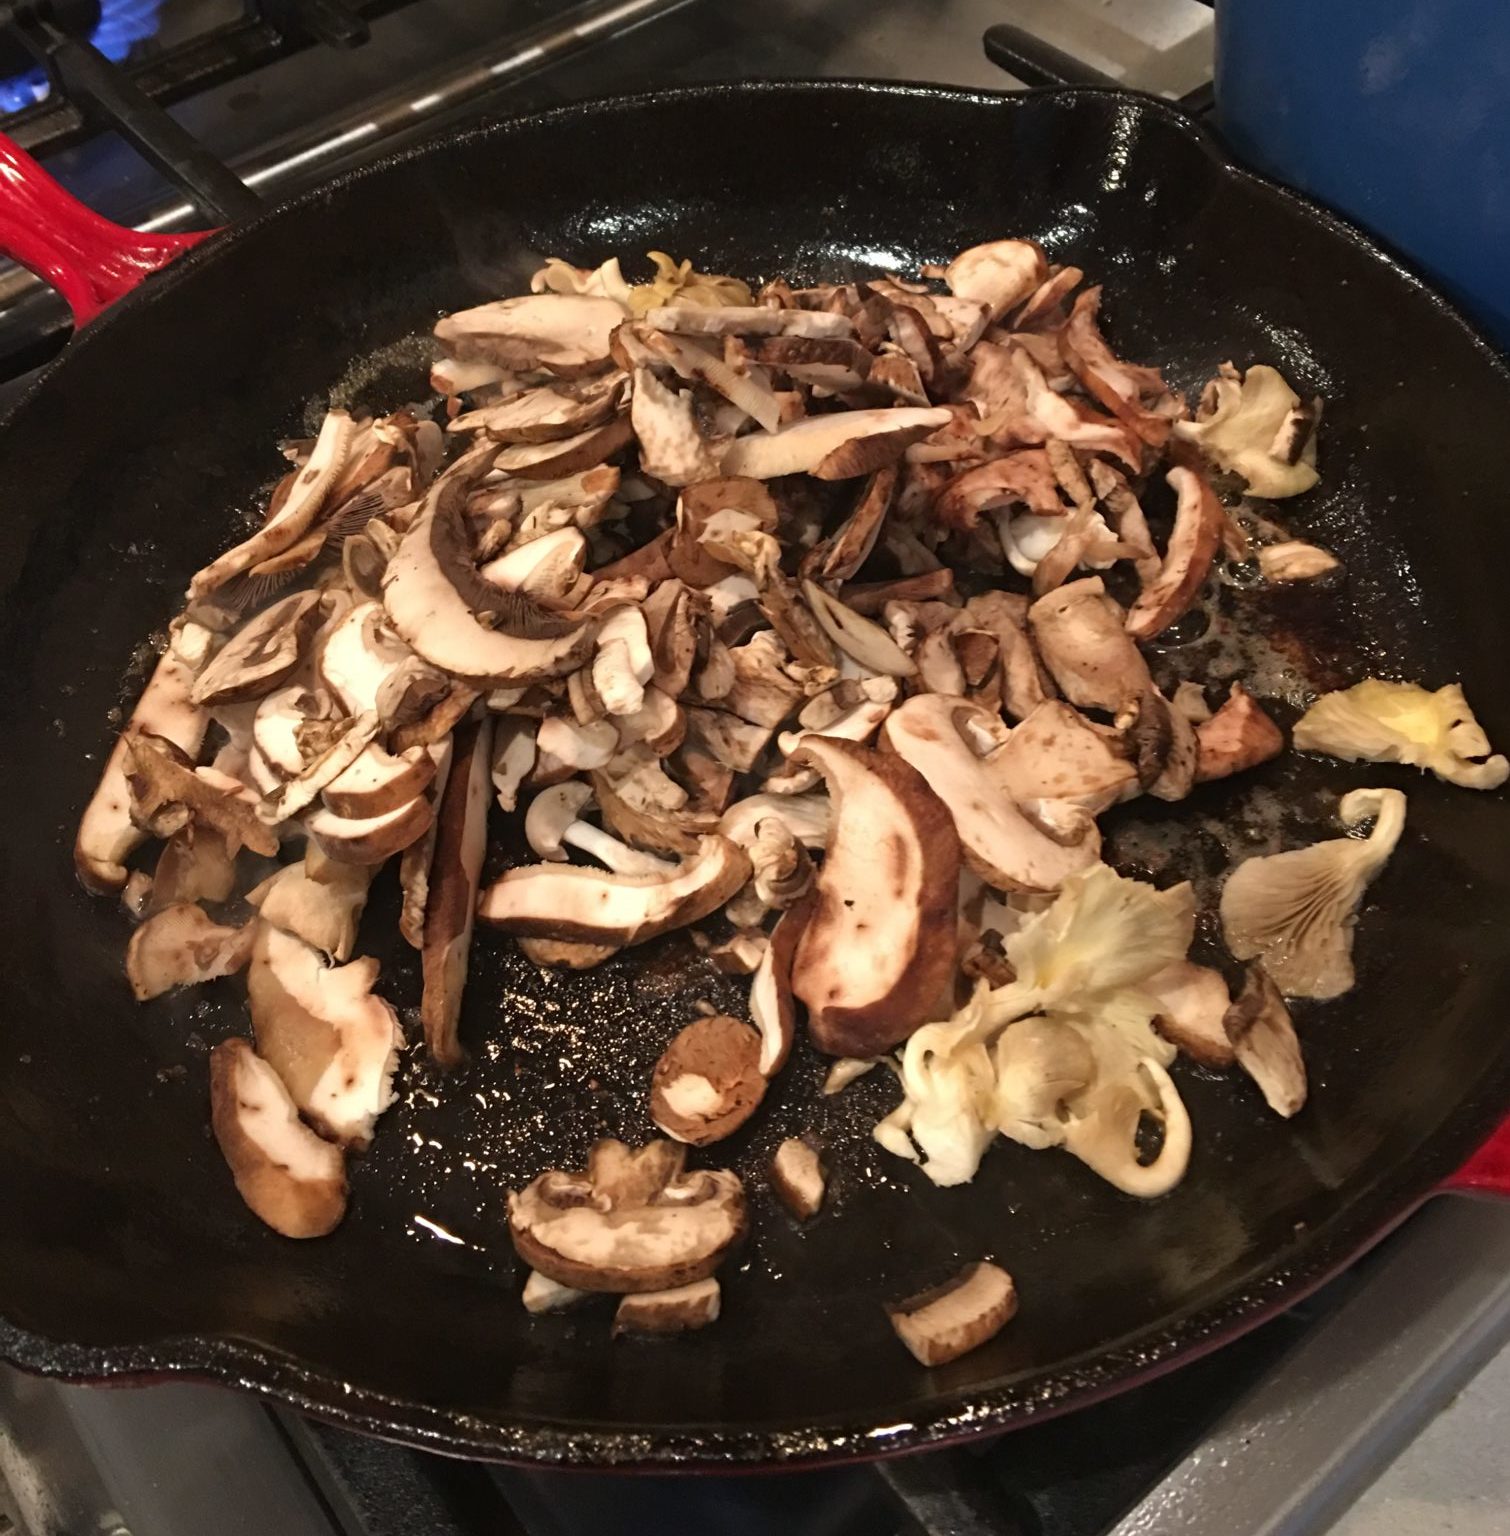 Sautéed mushroom